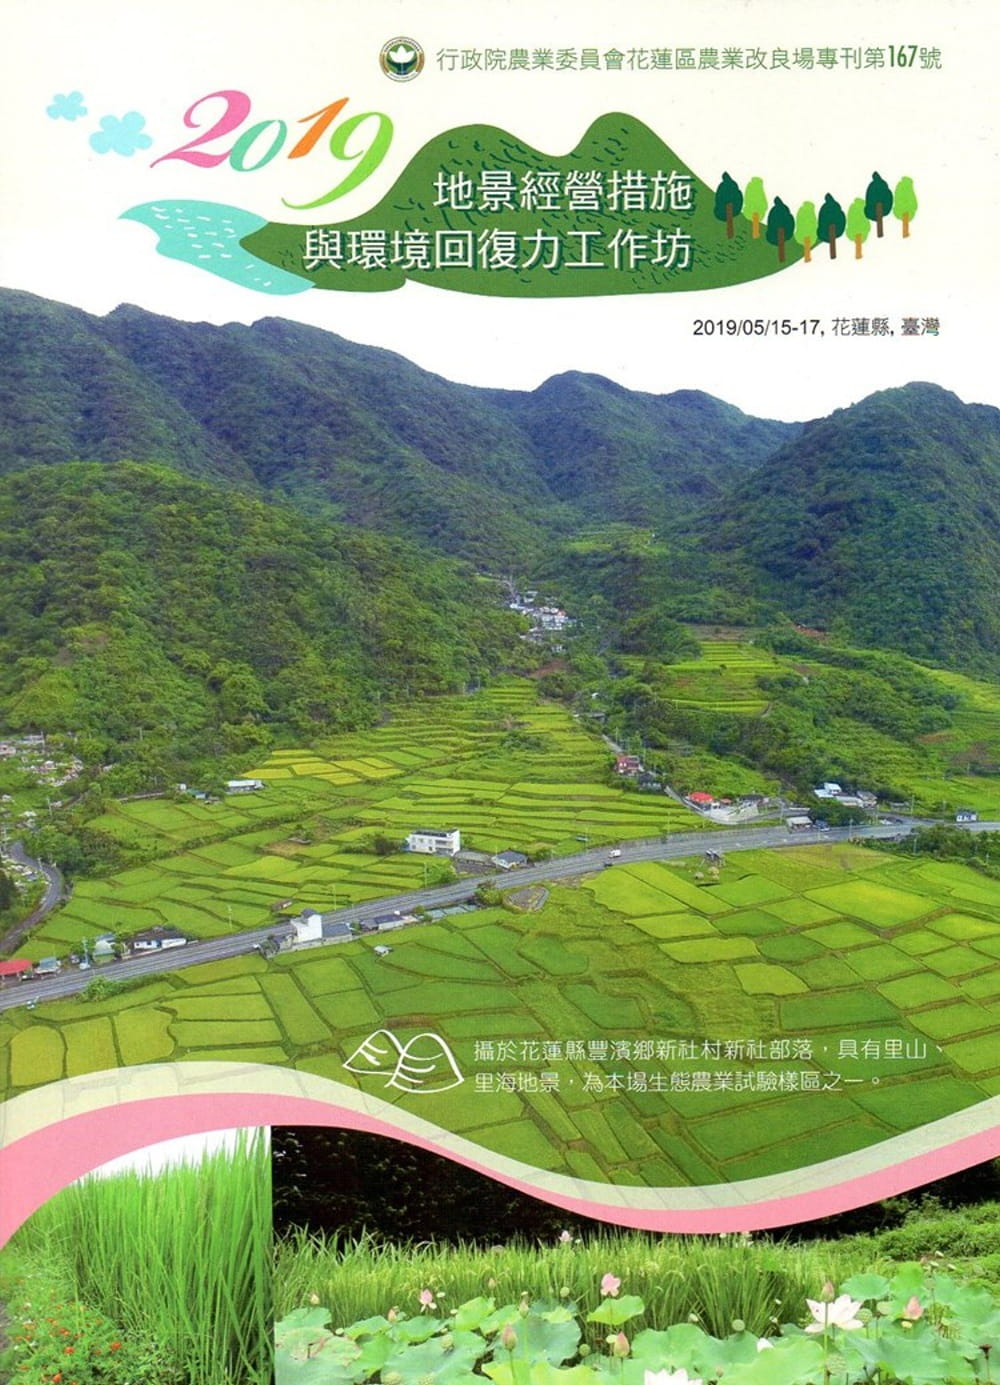 2019地景經營措施與環境回復力工作坊手冊(花蓮區農改場專刊第167號)